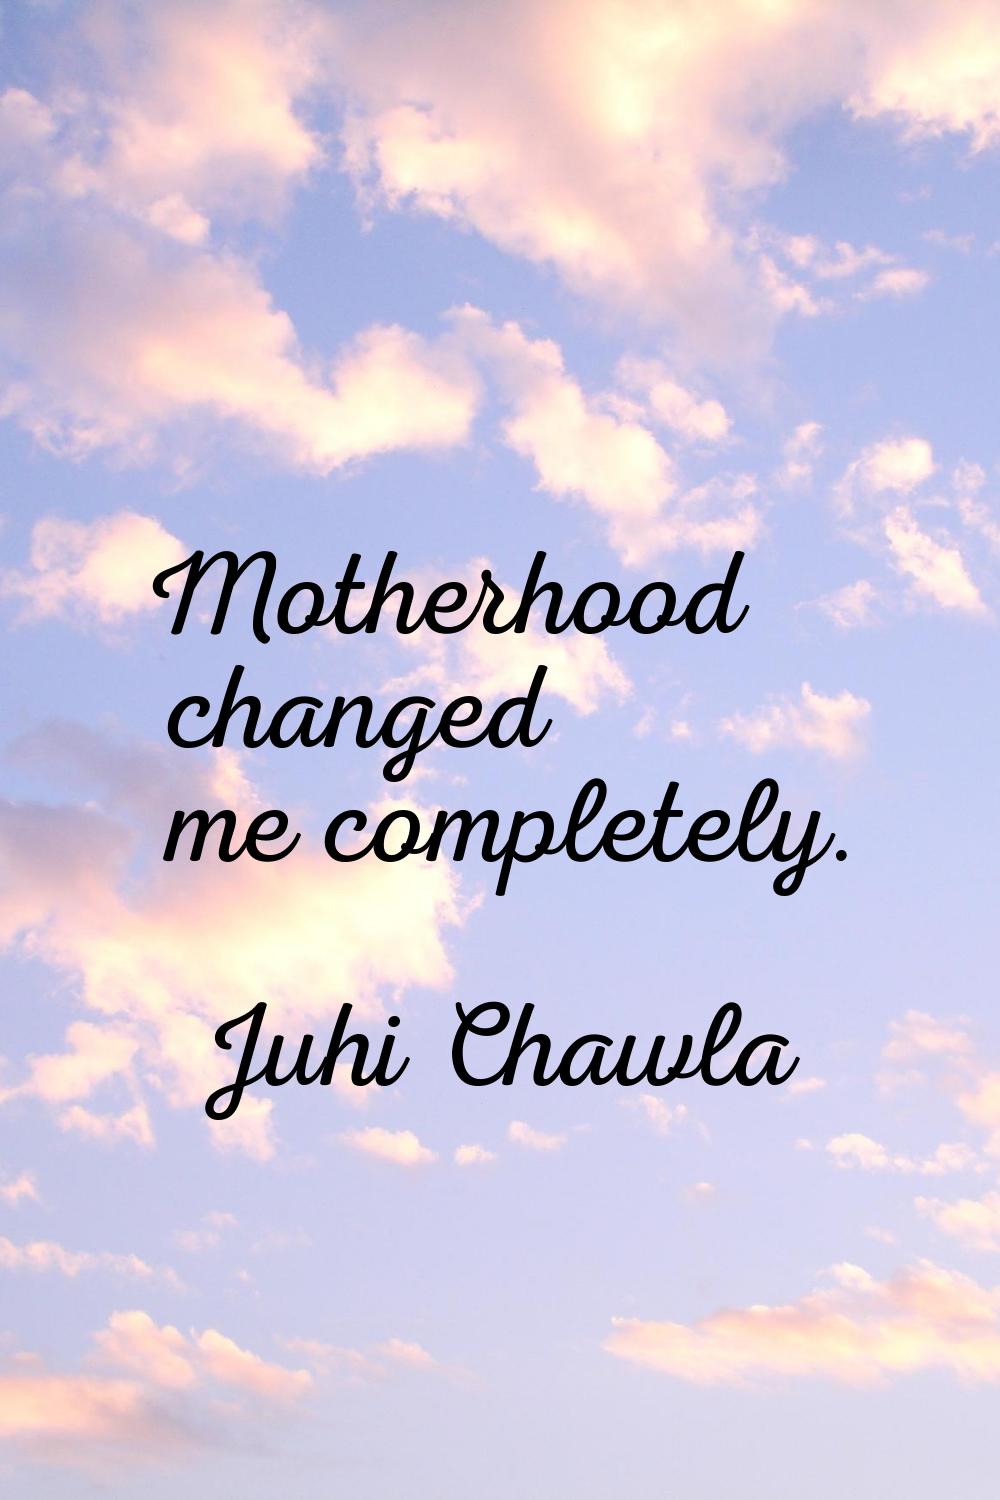 Motherhood changed me completely.